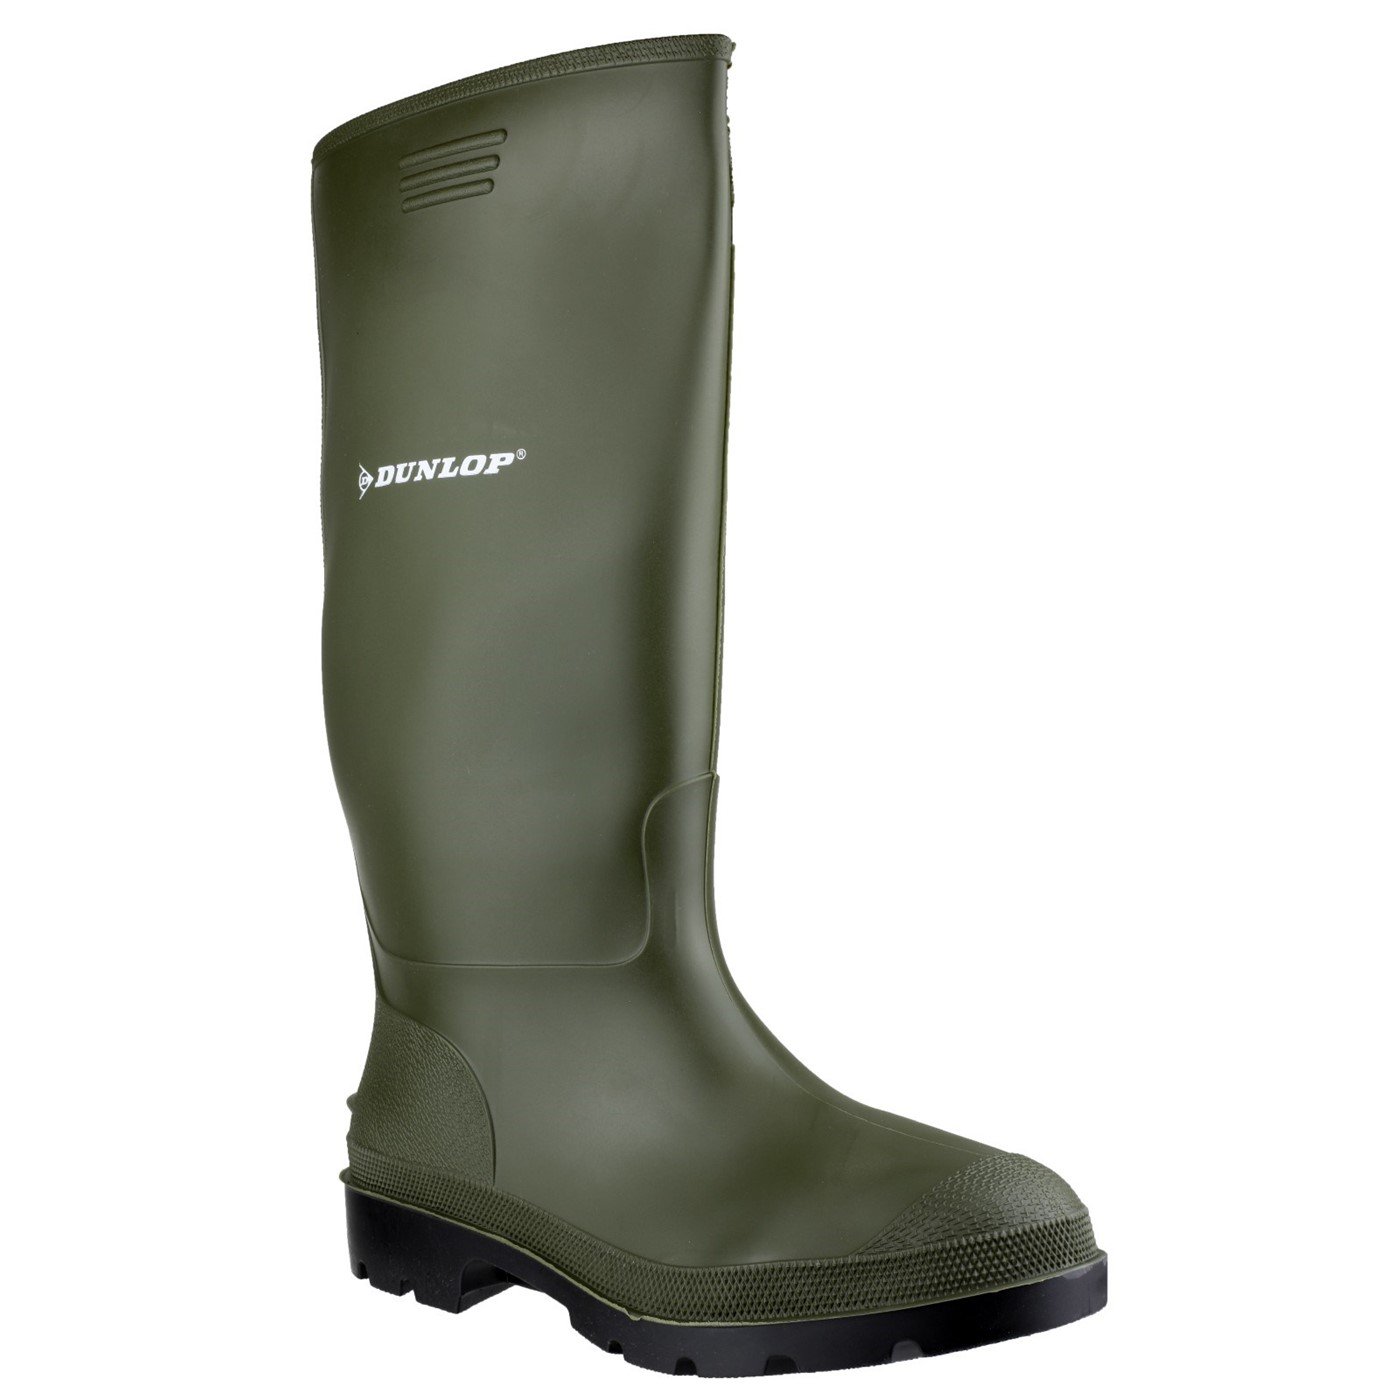 Dunlop Pricemaster Boot, Green, Size 3(36)